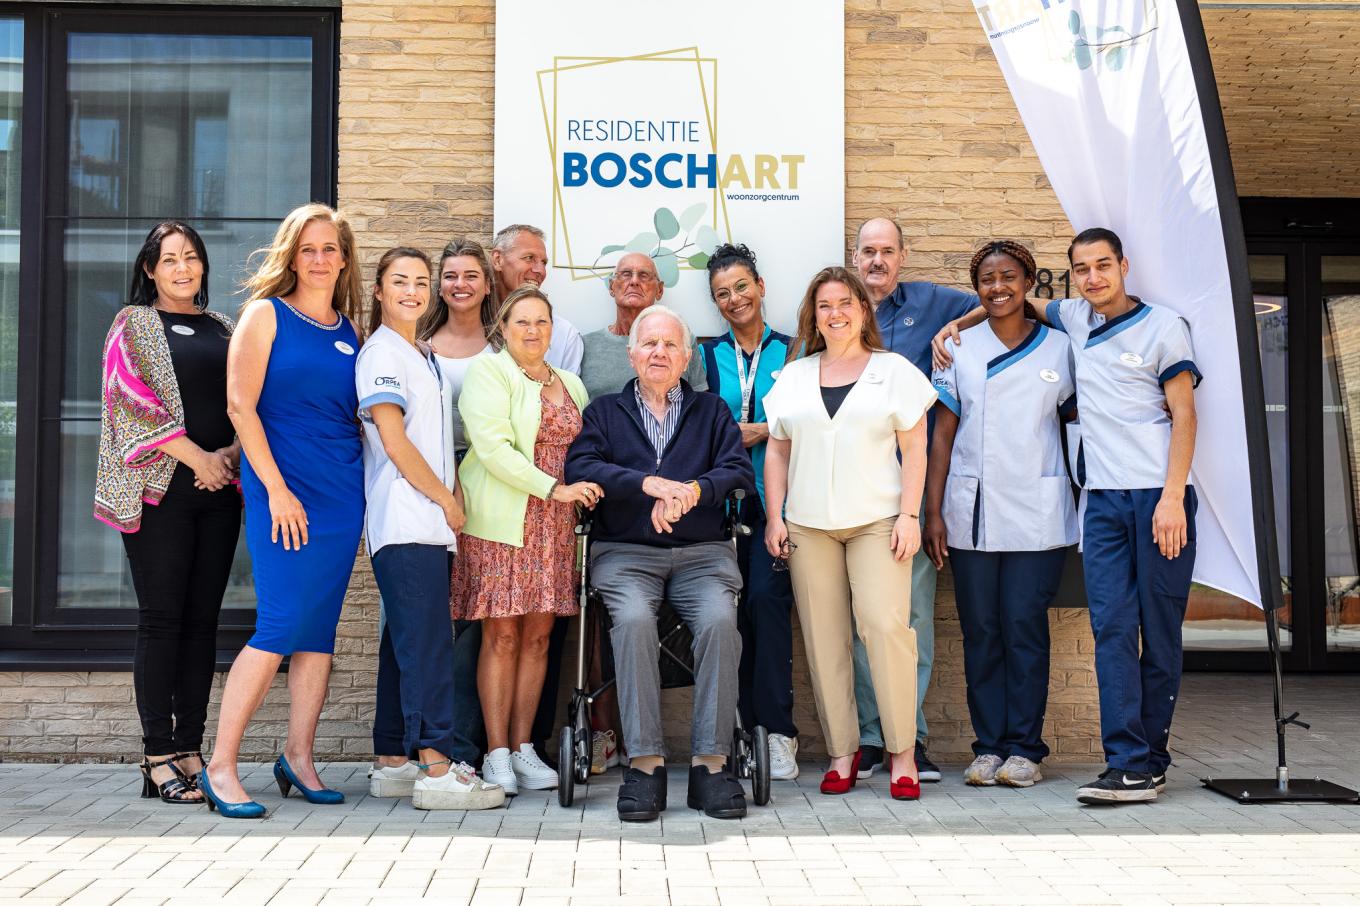 Boschart preview bezoek